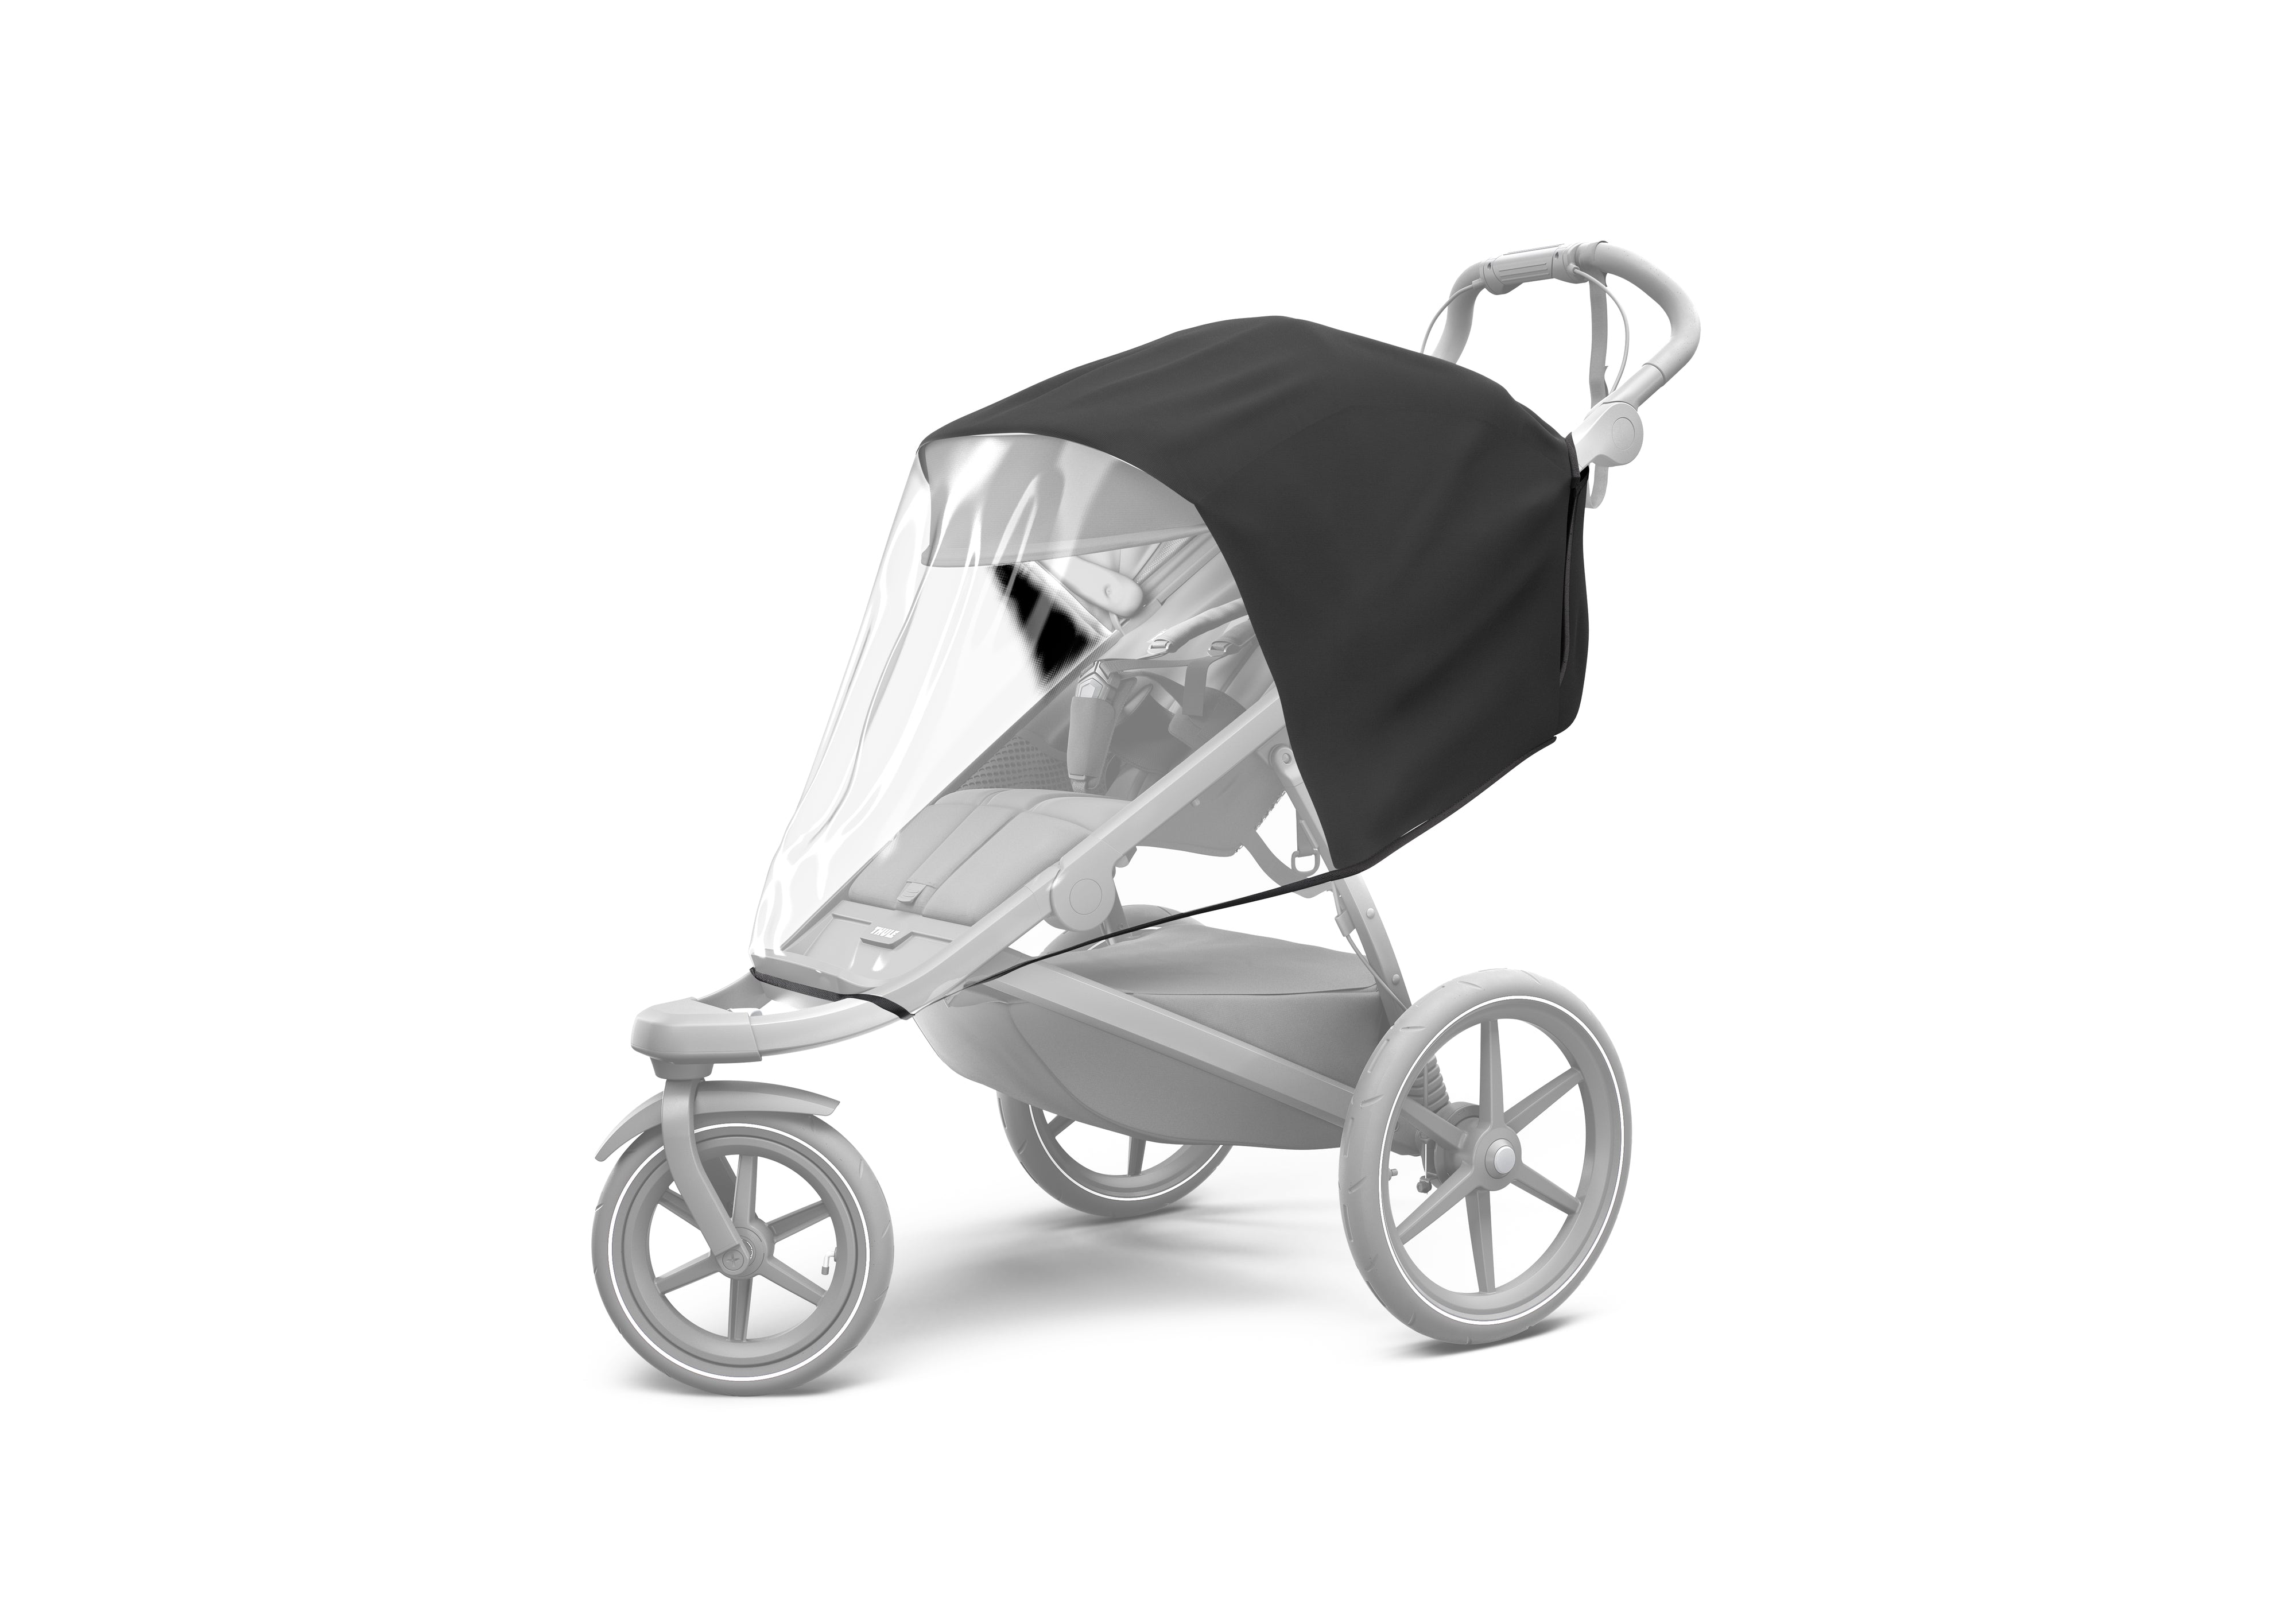 Thule Urban Glide 2 Newborn Bundle: Stroller + 3 Accessories + Newborn Inlay